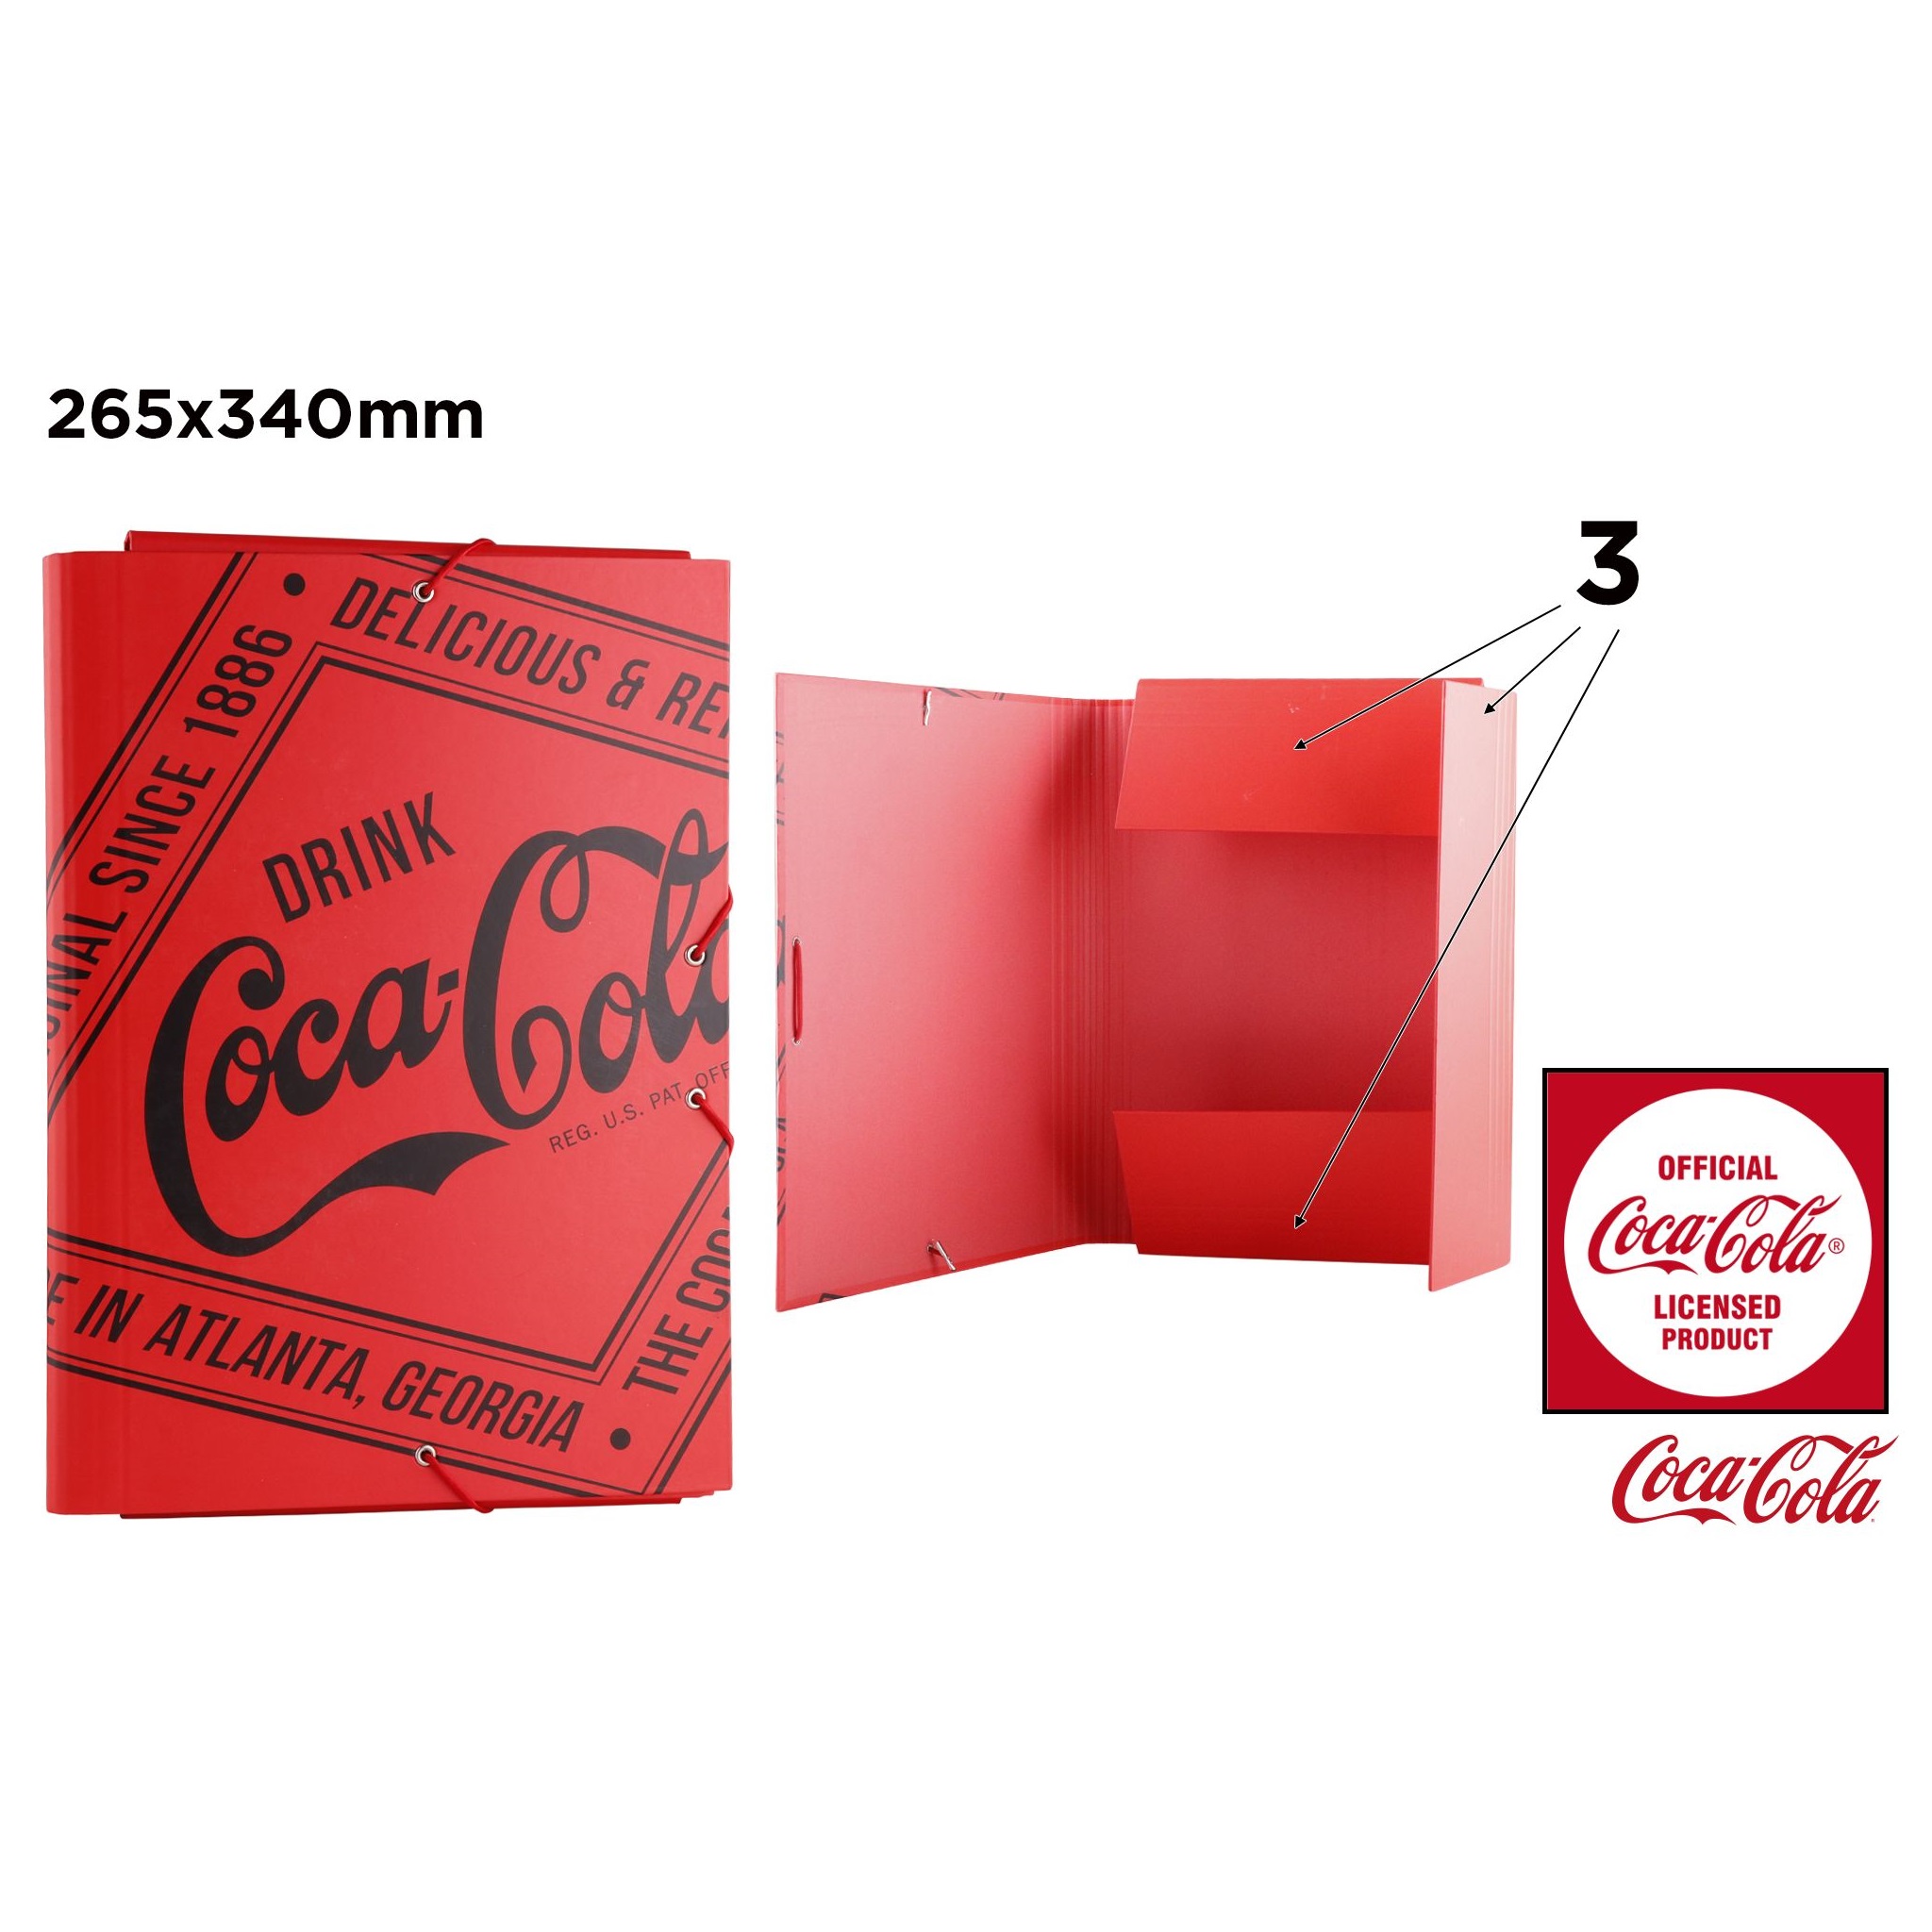 CC013 Coca-Cola File Box Cardboard Data Organizer with Rubber Band Closure